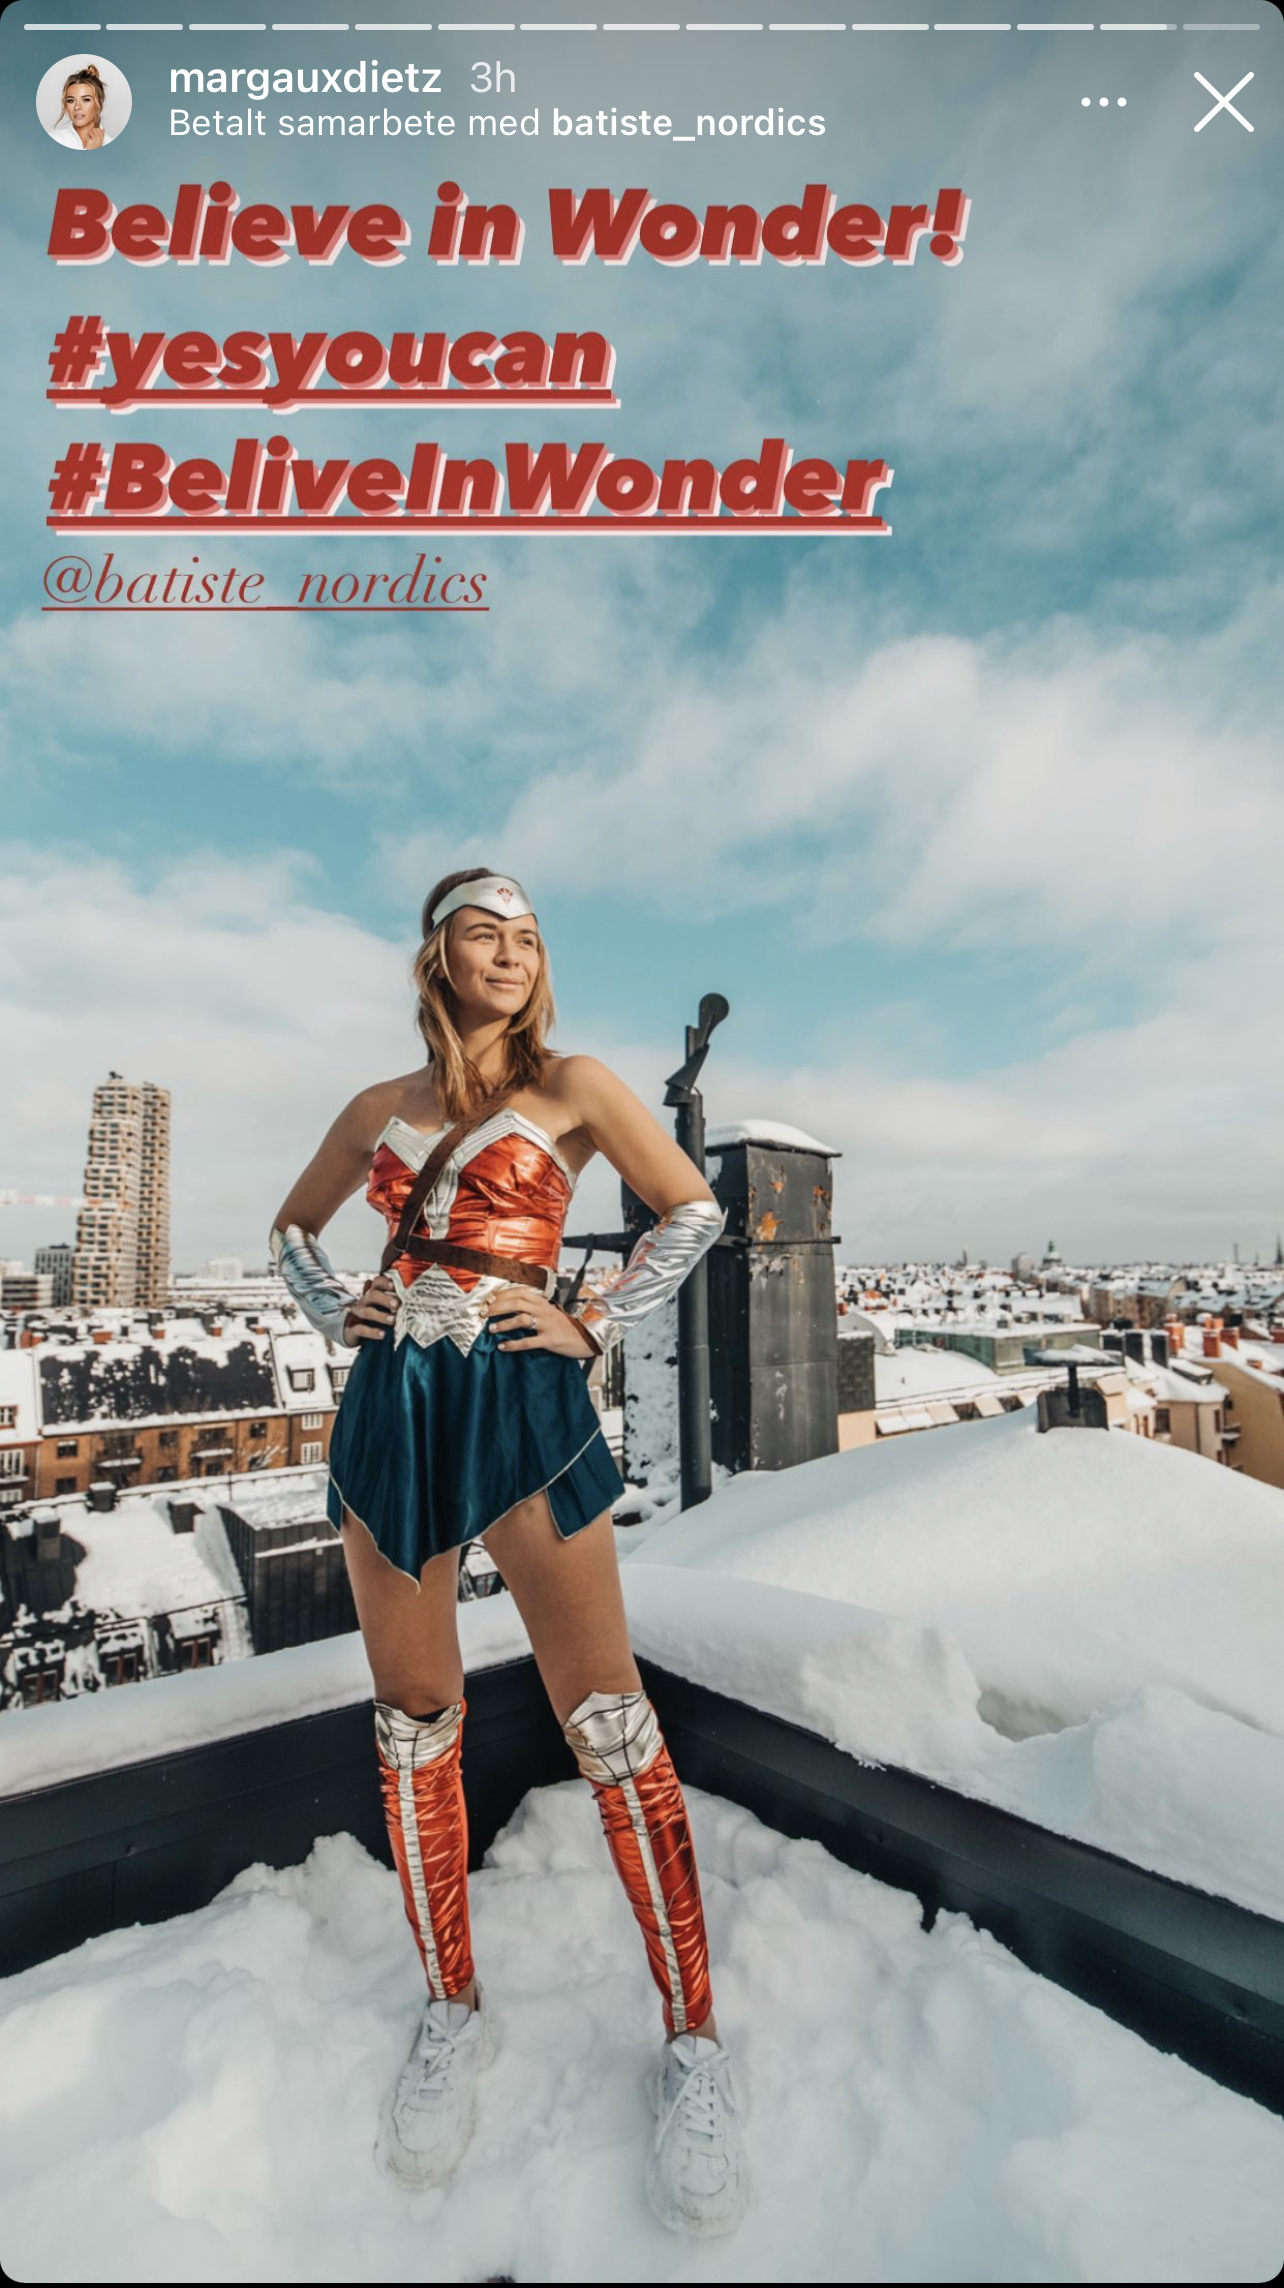 Margaux Dietz står iklädd en Wonder Woman-kostym uppe på ett snöigt tak